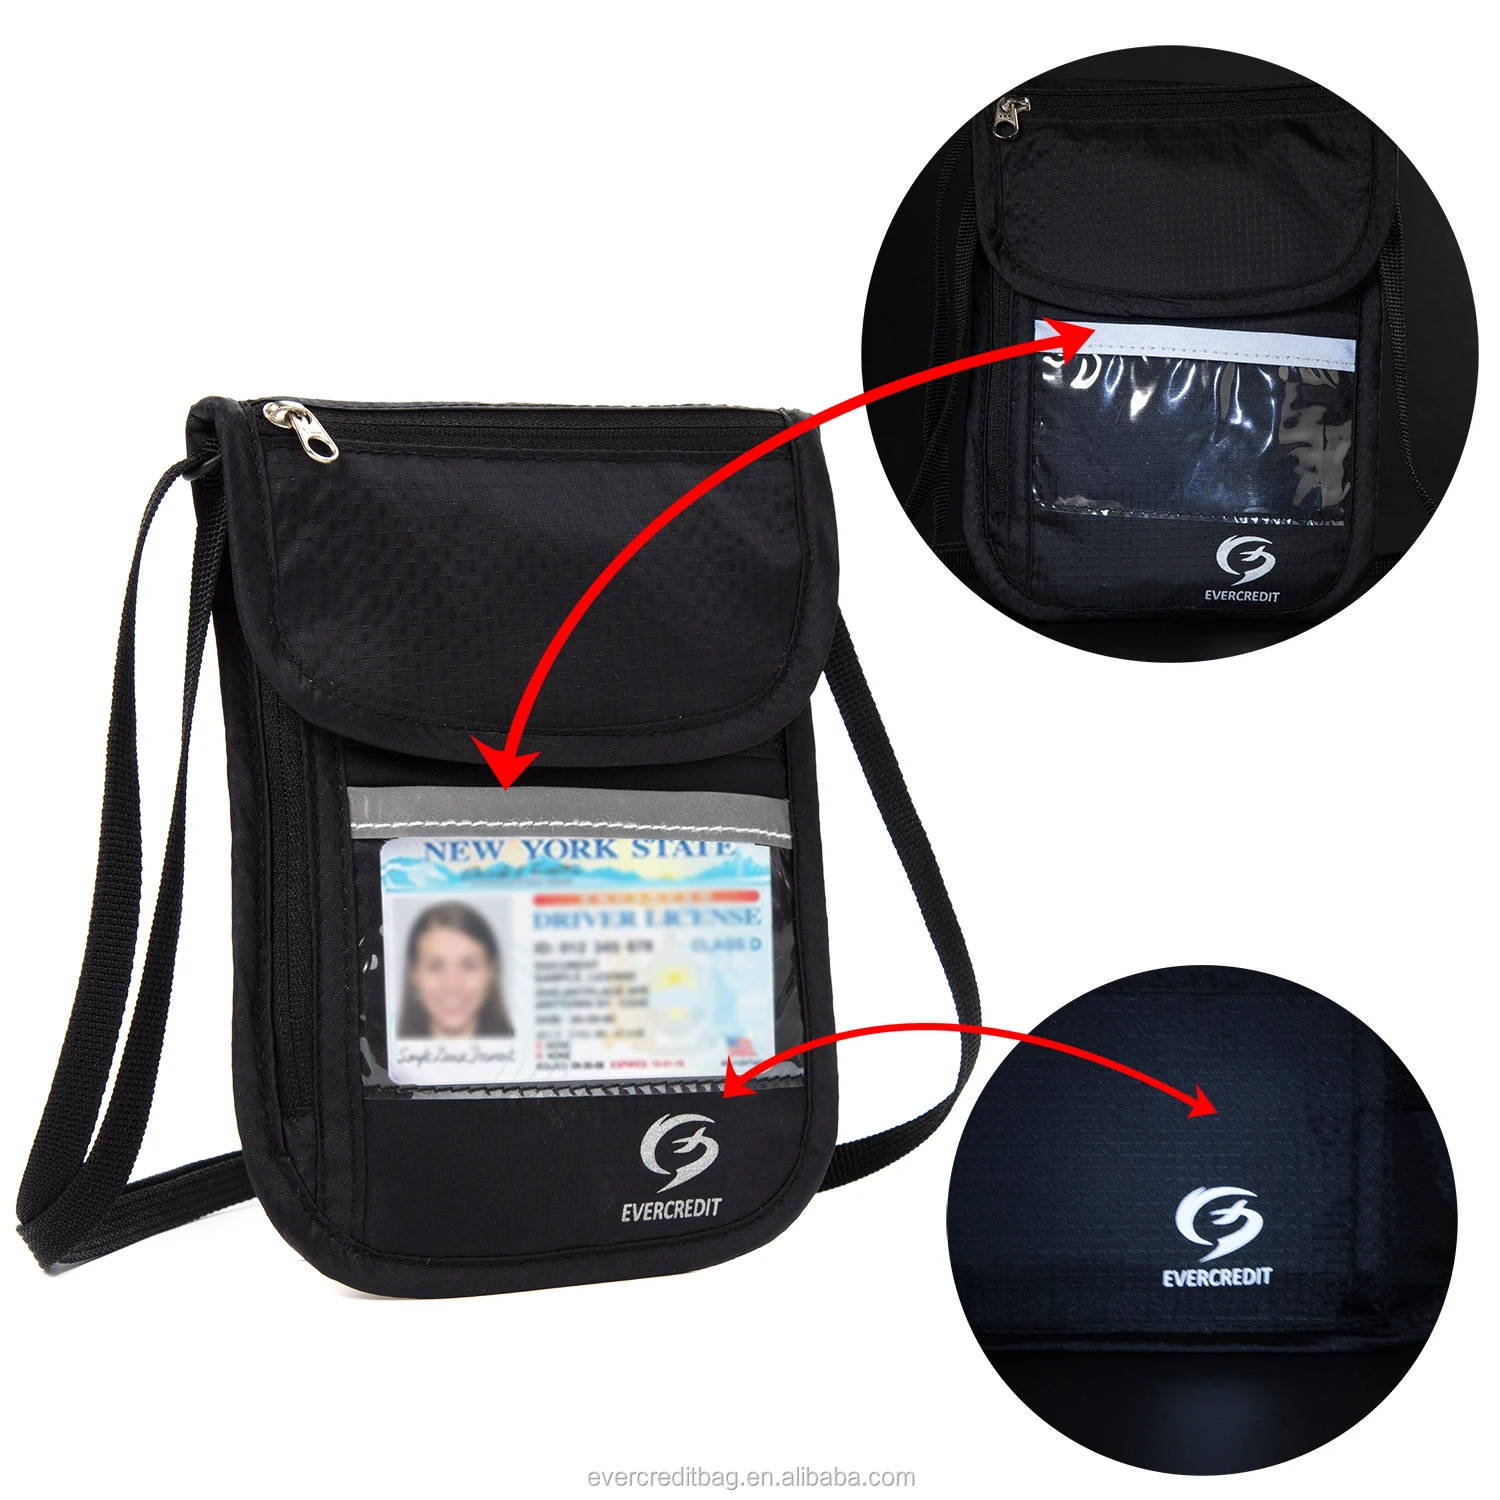 RFID blocking passport card holder stash pouch money security travel neck wallet